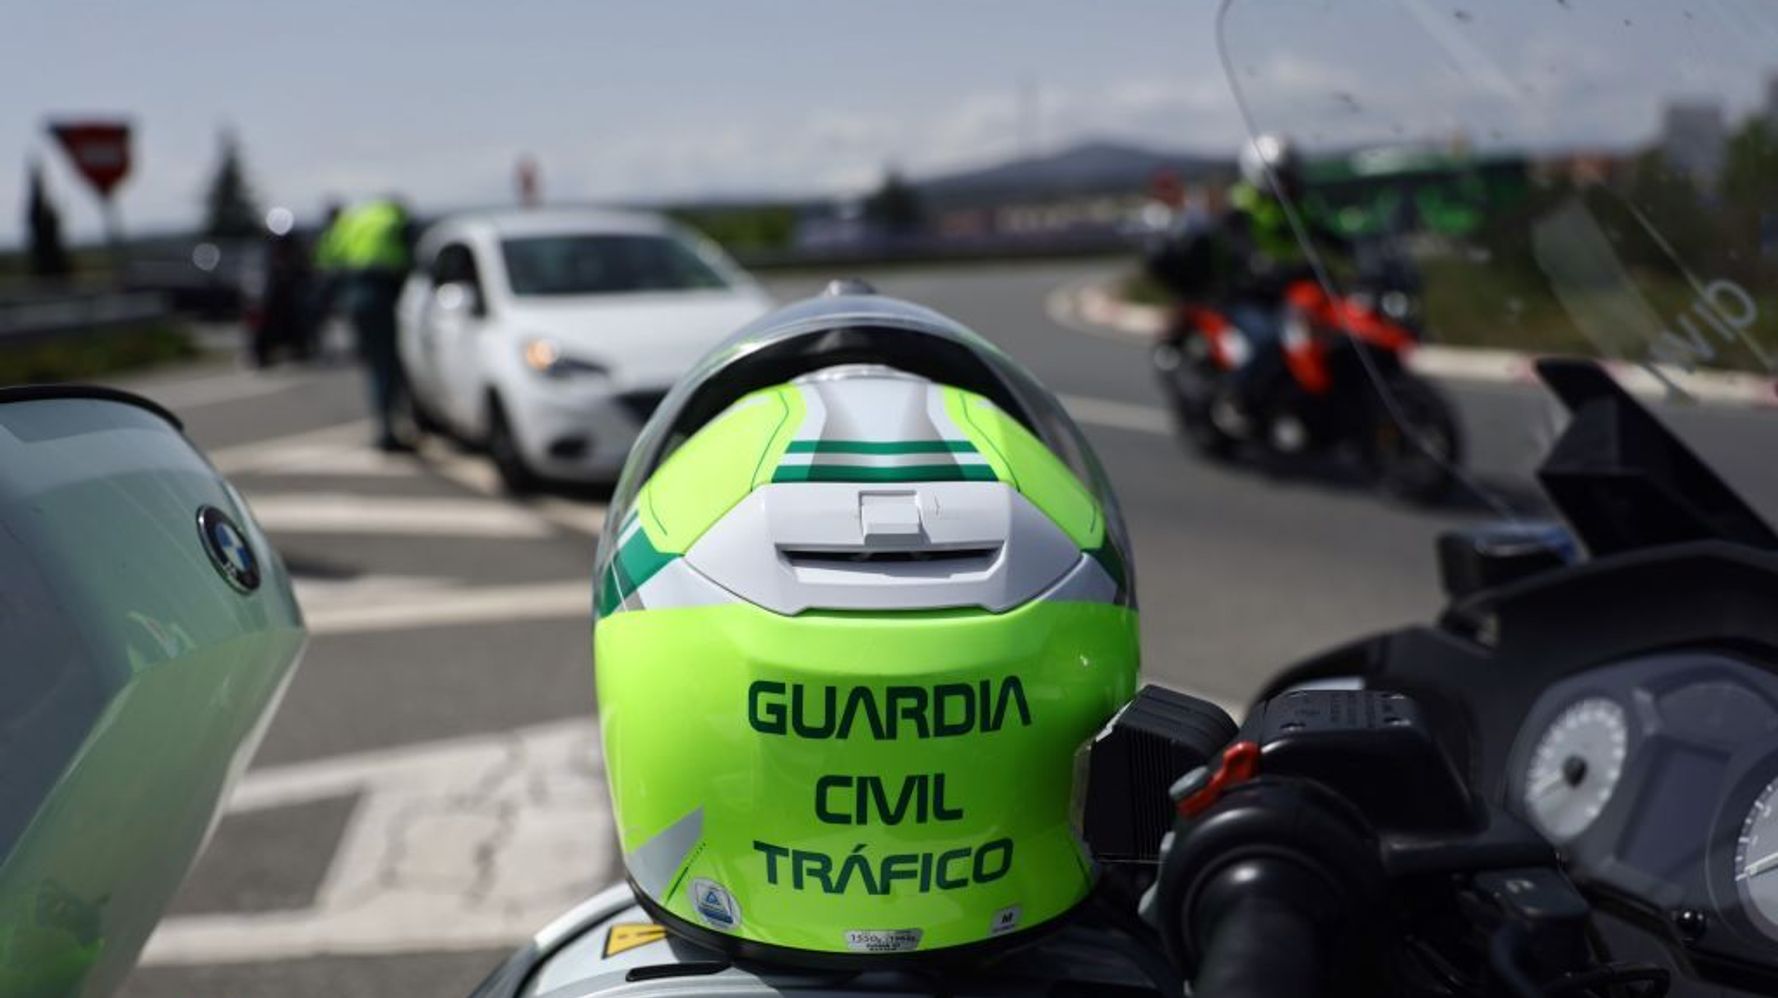 La Guardia Civil desmiente el vídeo viral que mostraría su nuevo método para hacer frenar